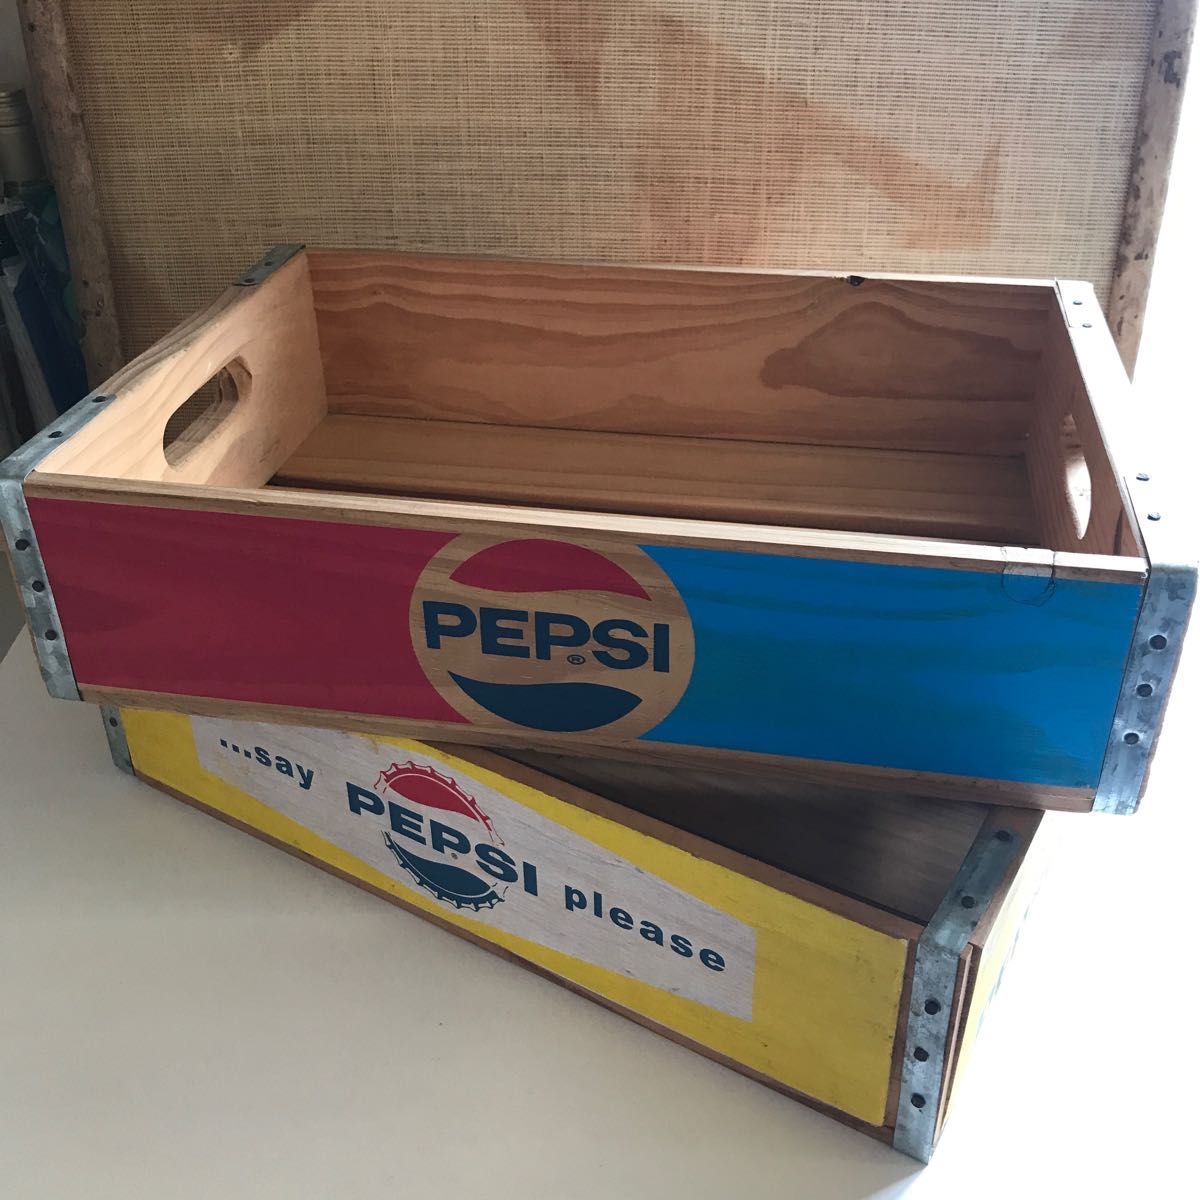 ペプシコーラ木箱 ウッドボックス ウッドケース ペプシコーラ木箱 平成レトロ昭和レトロ コカ・コーラ木箱 コカコーラ木箱PEPSI